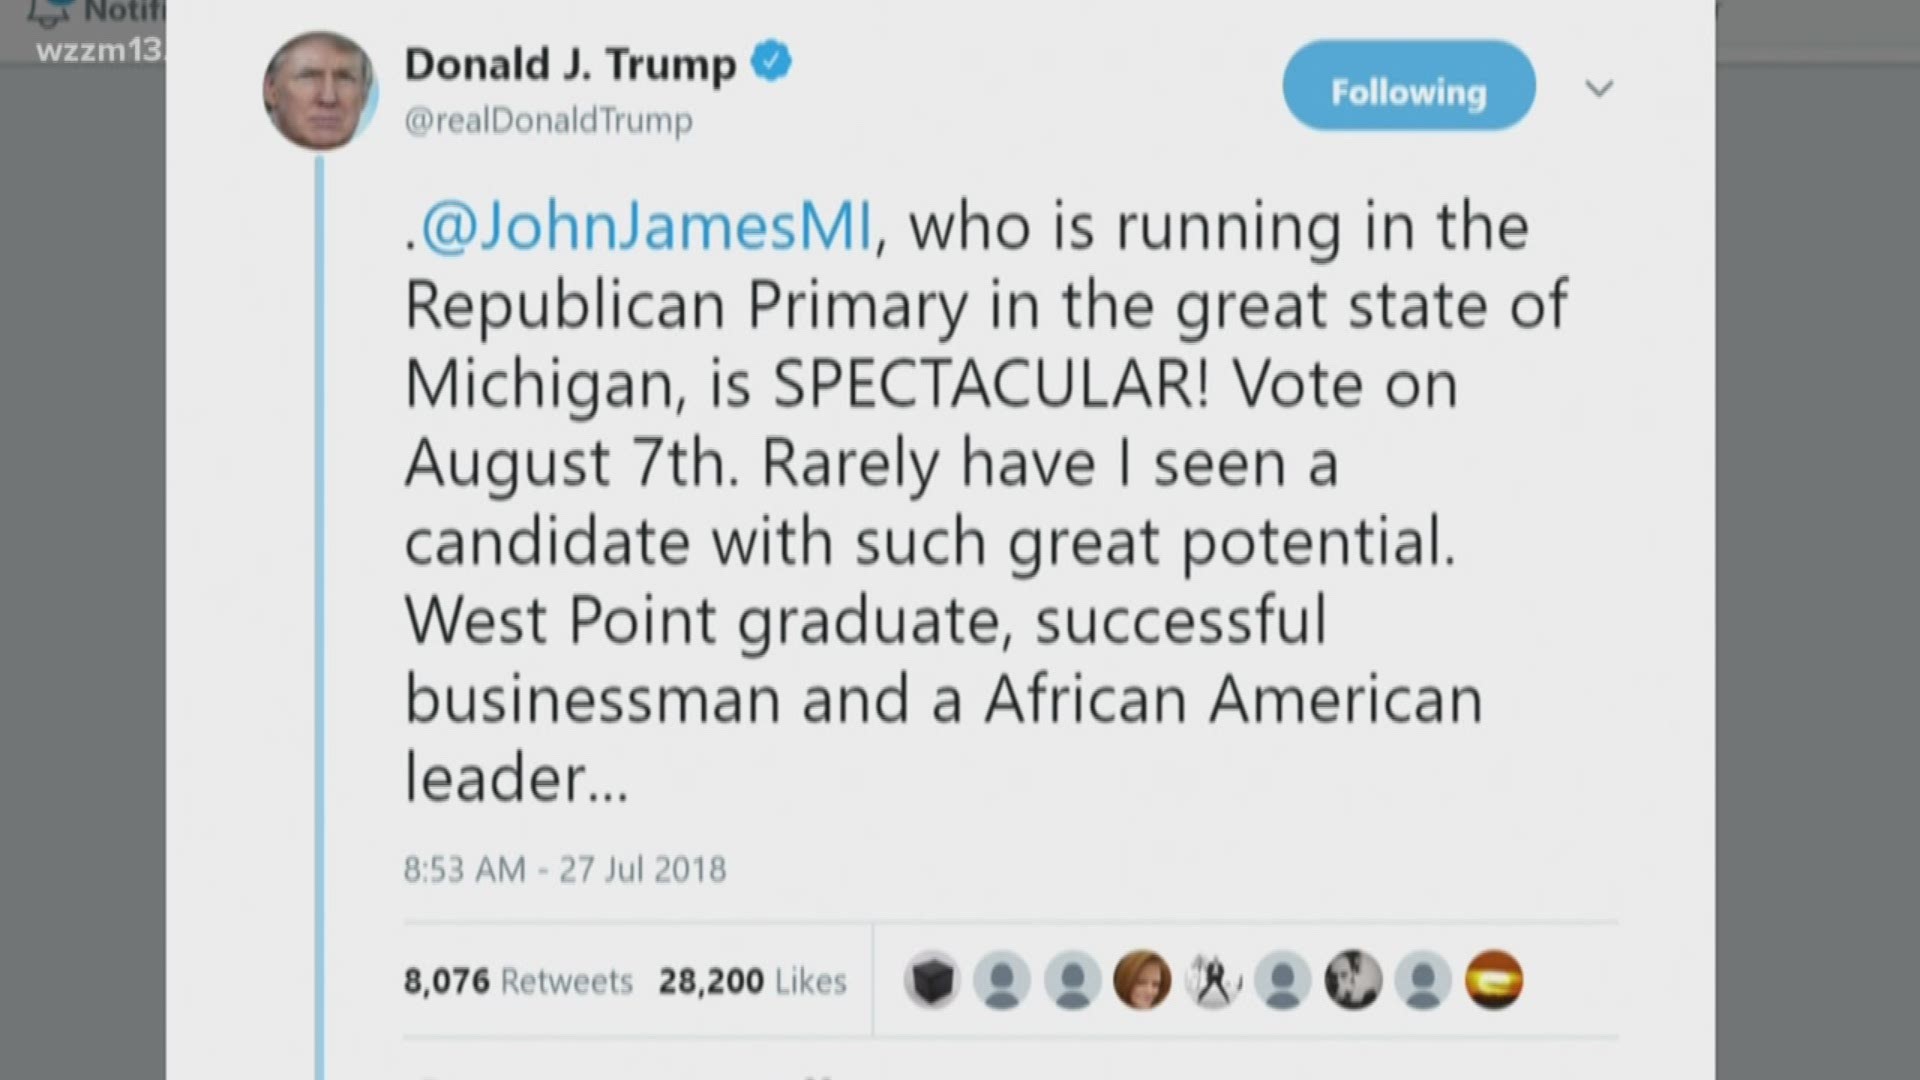 Trump endorses John James